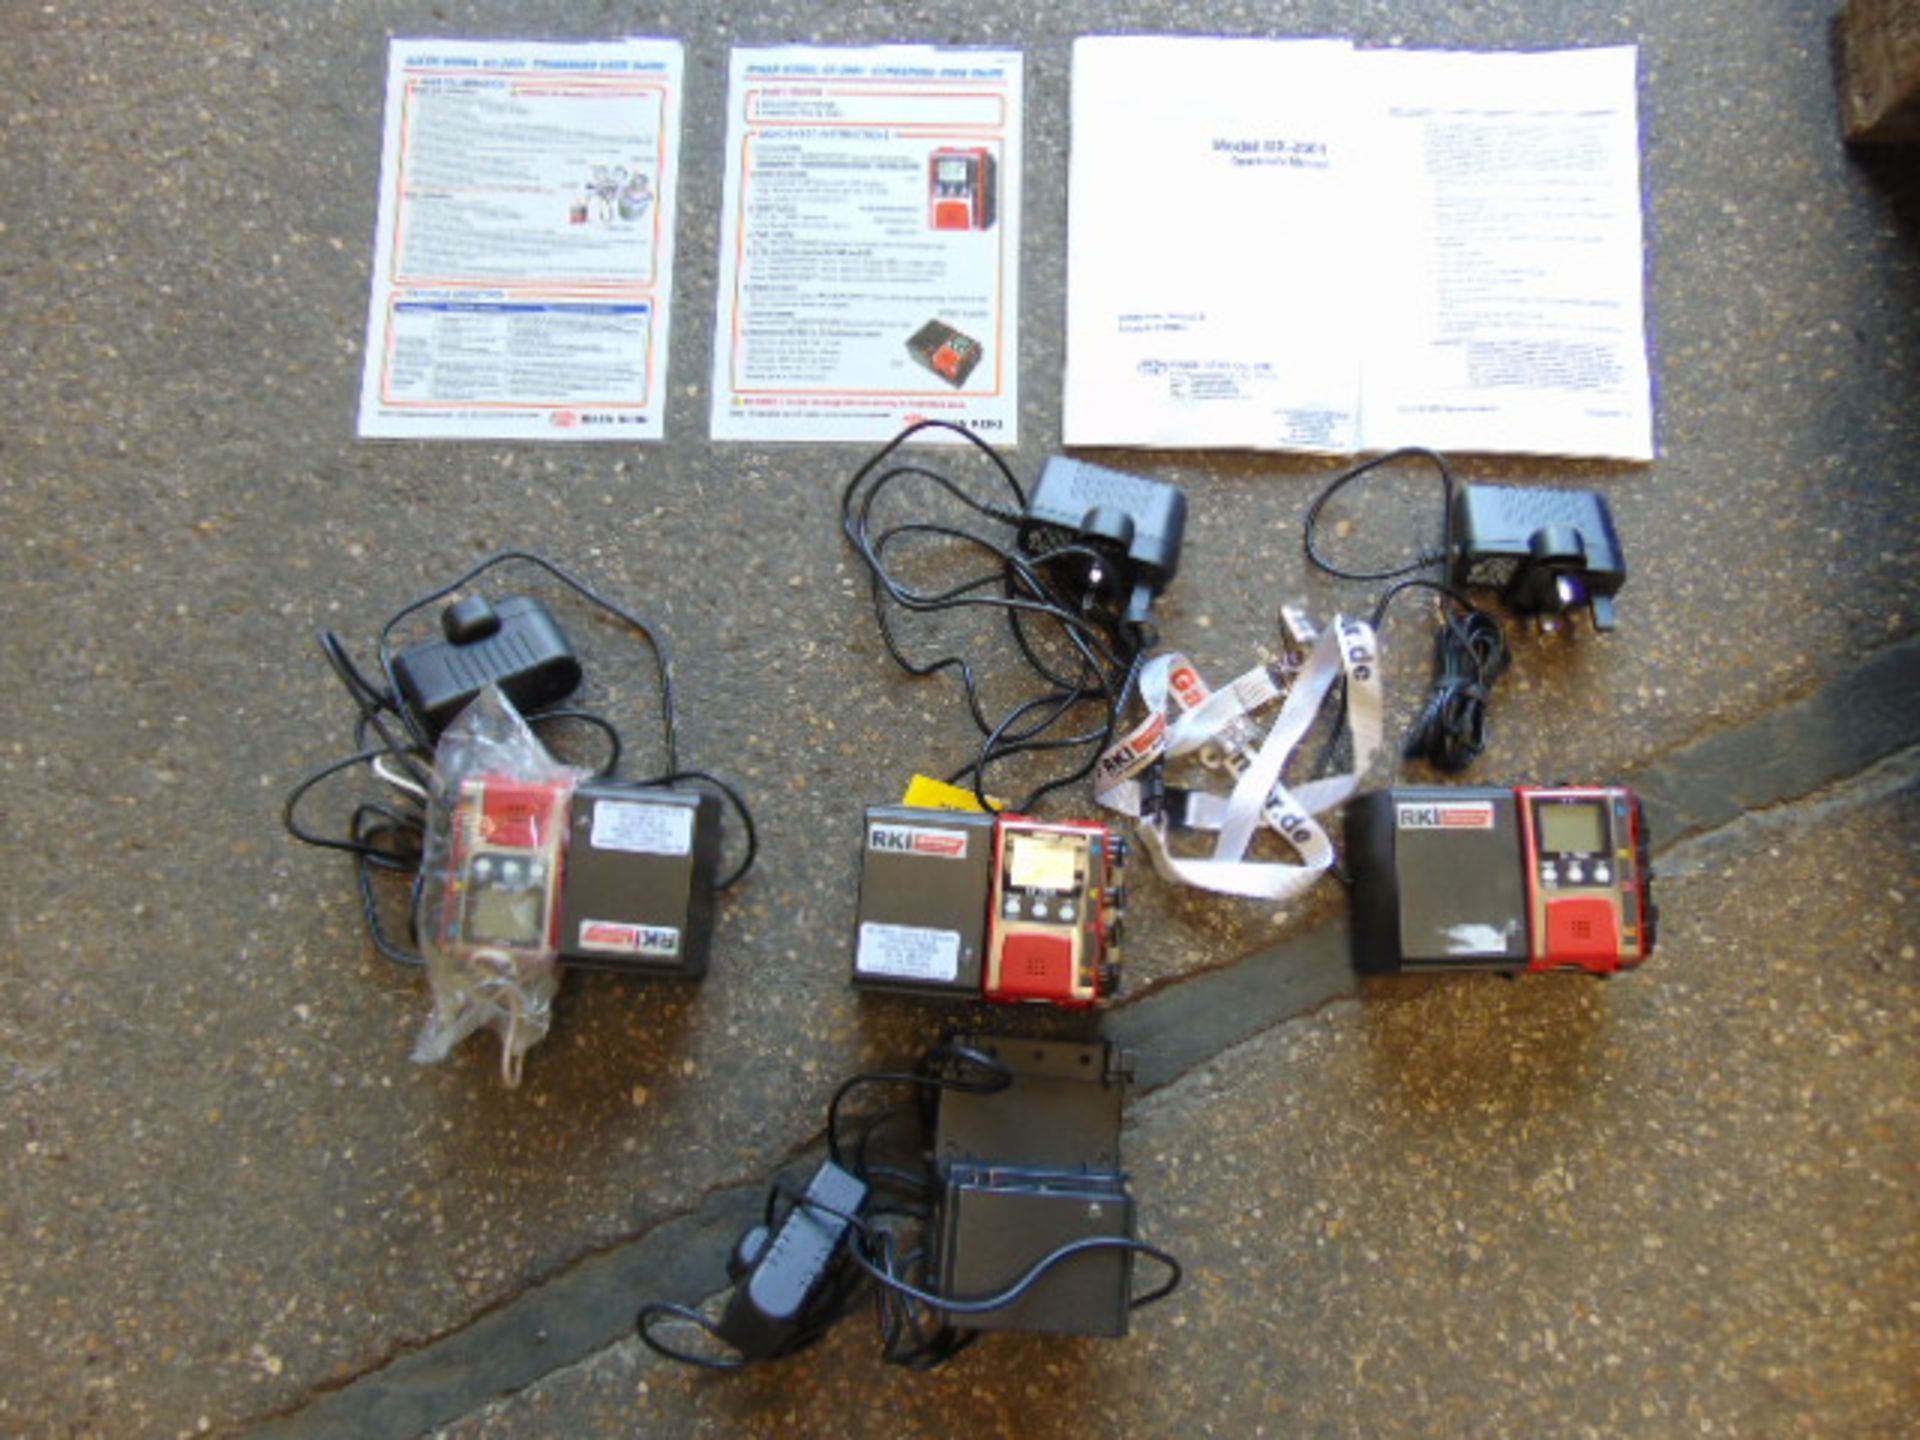 3 x RKI GX-2001 Gas Monitors C/W Chargers